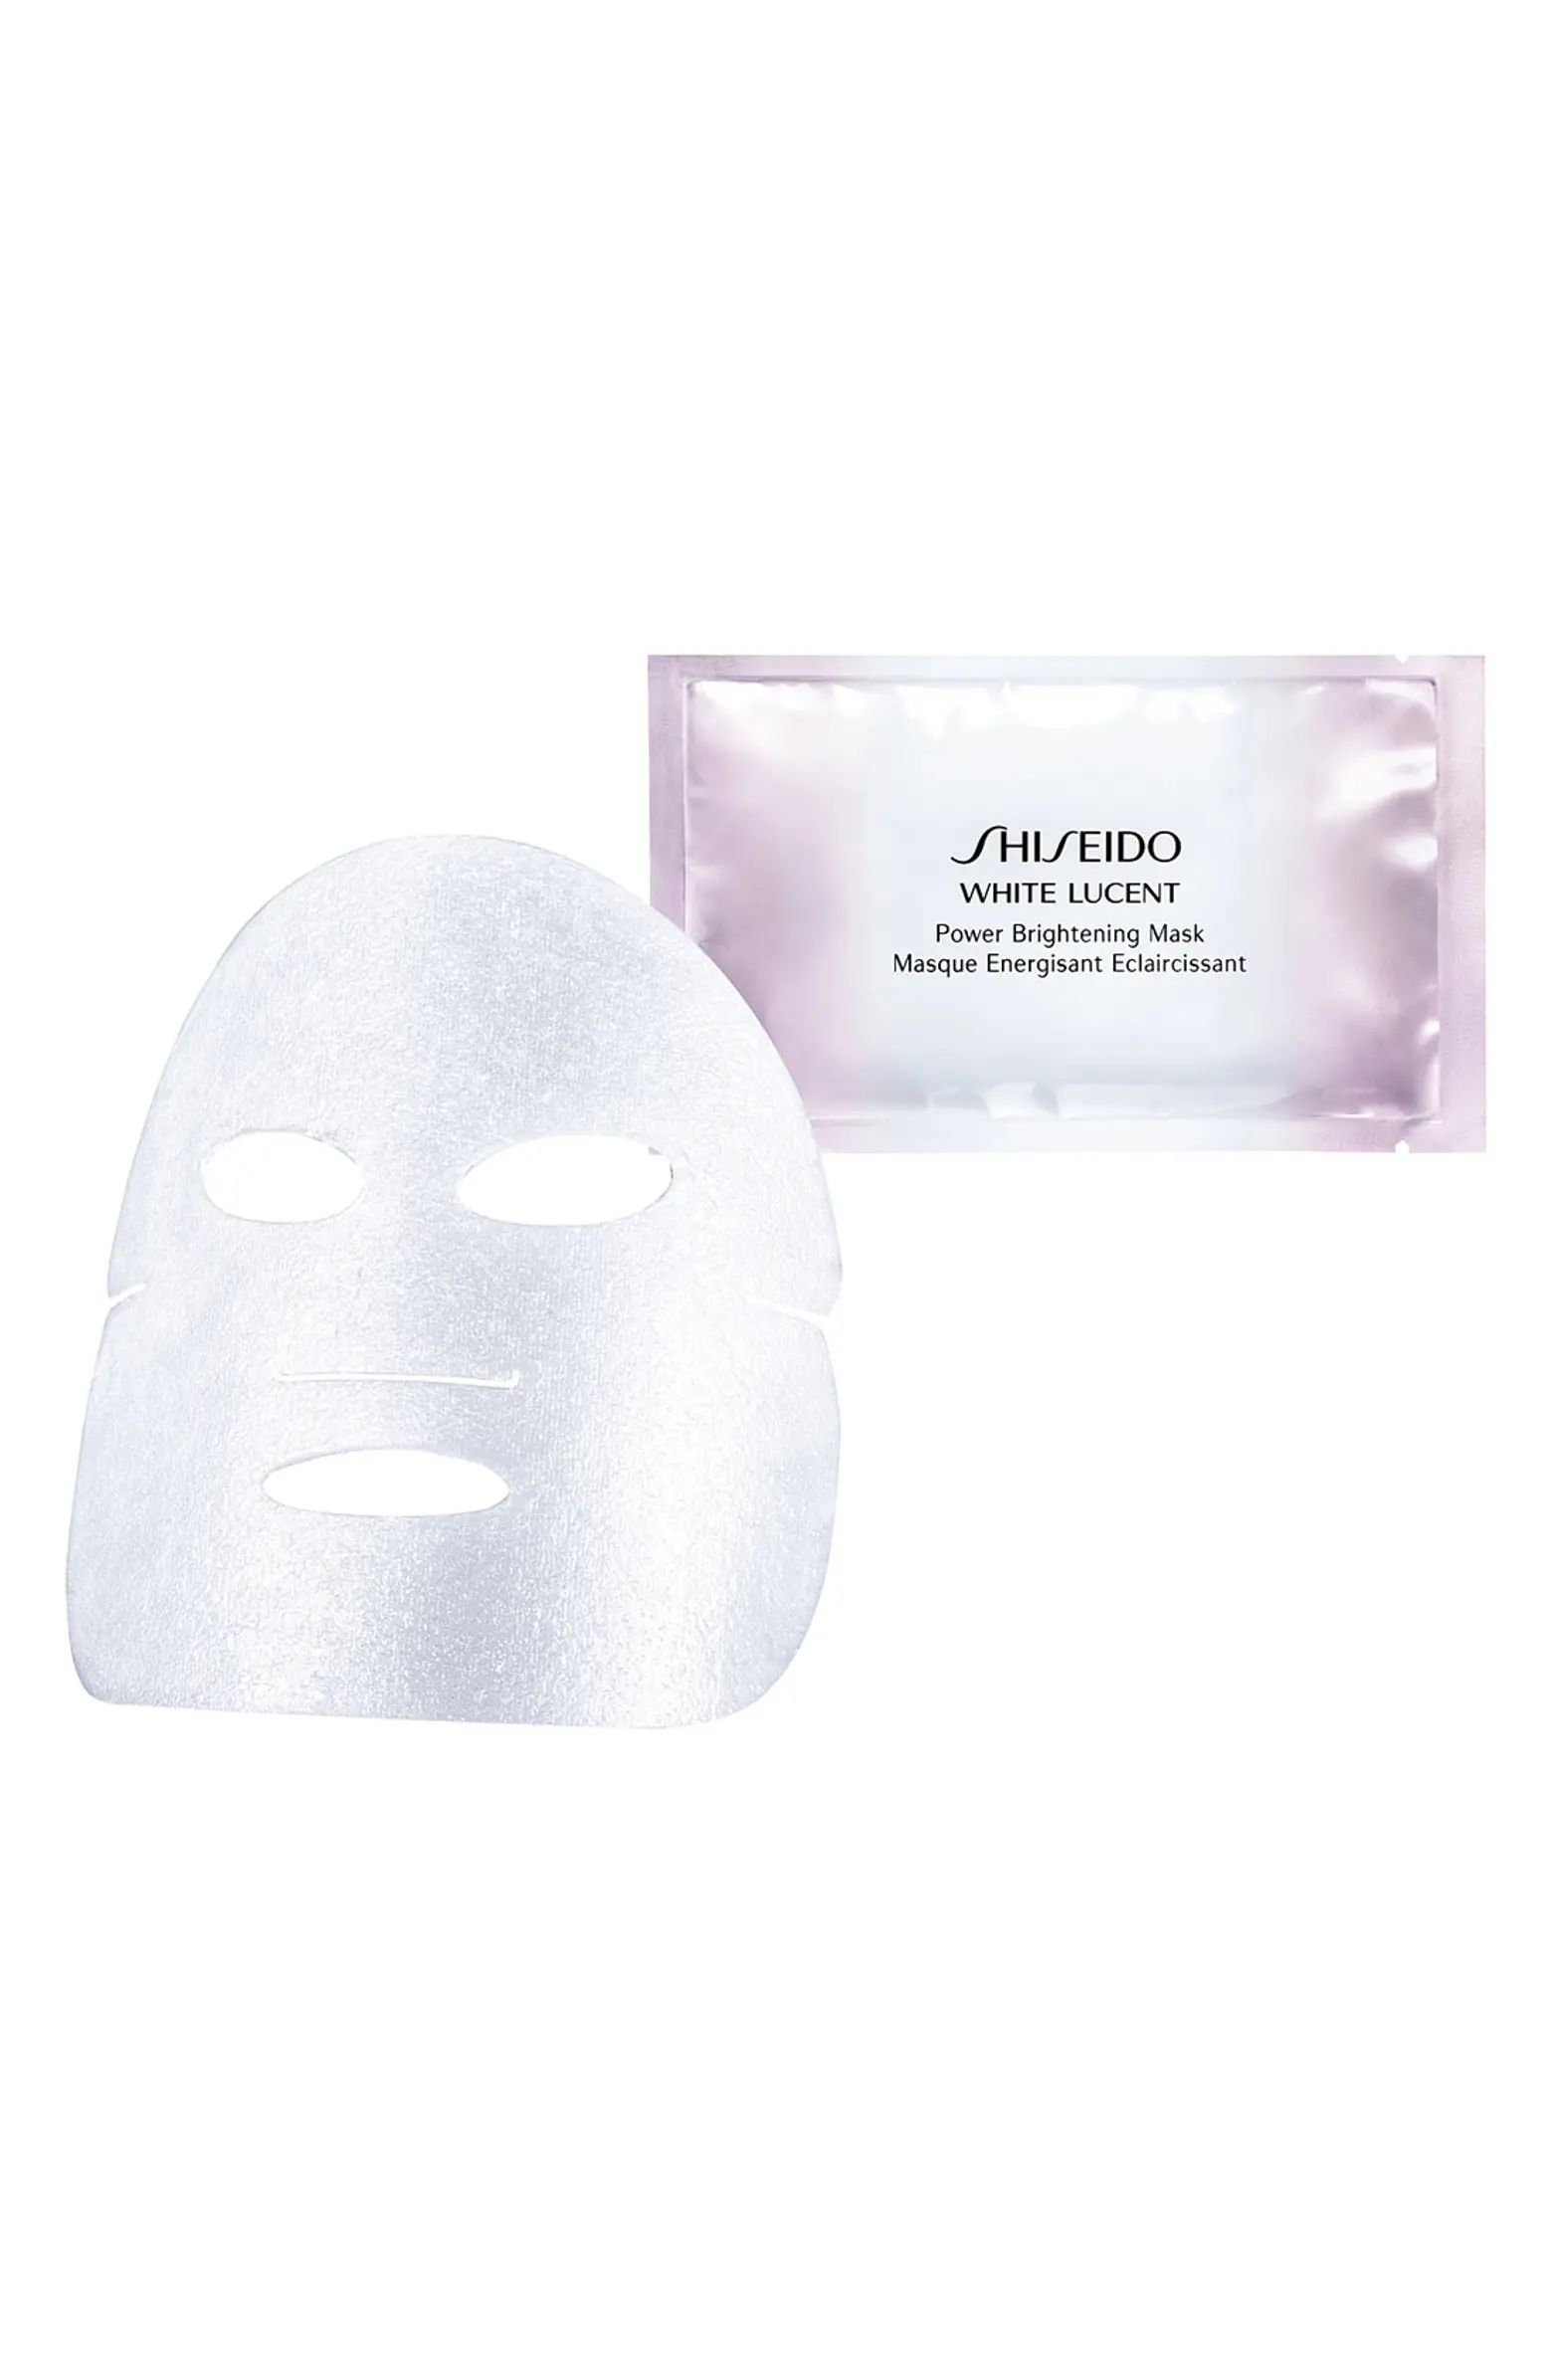 Shiseido White Lucent Power Brightening Mask | Nordstrom | Nordstrom